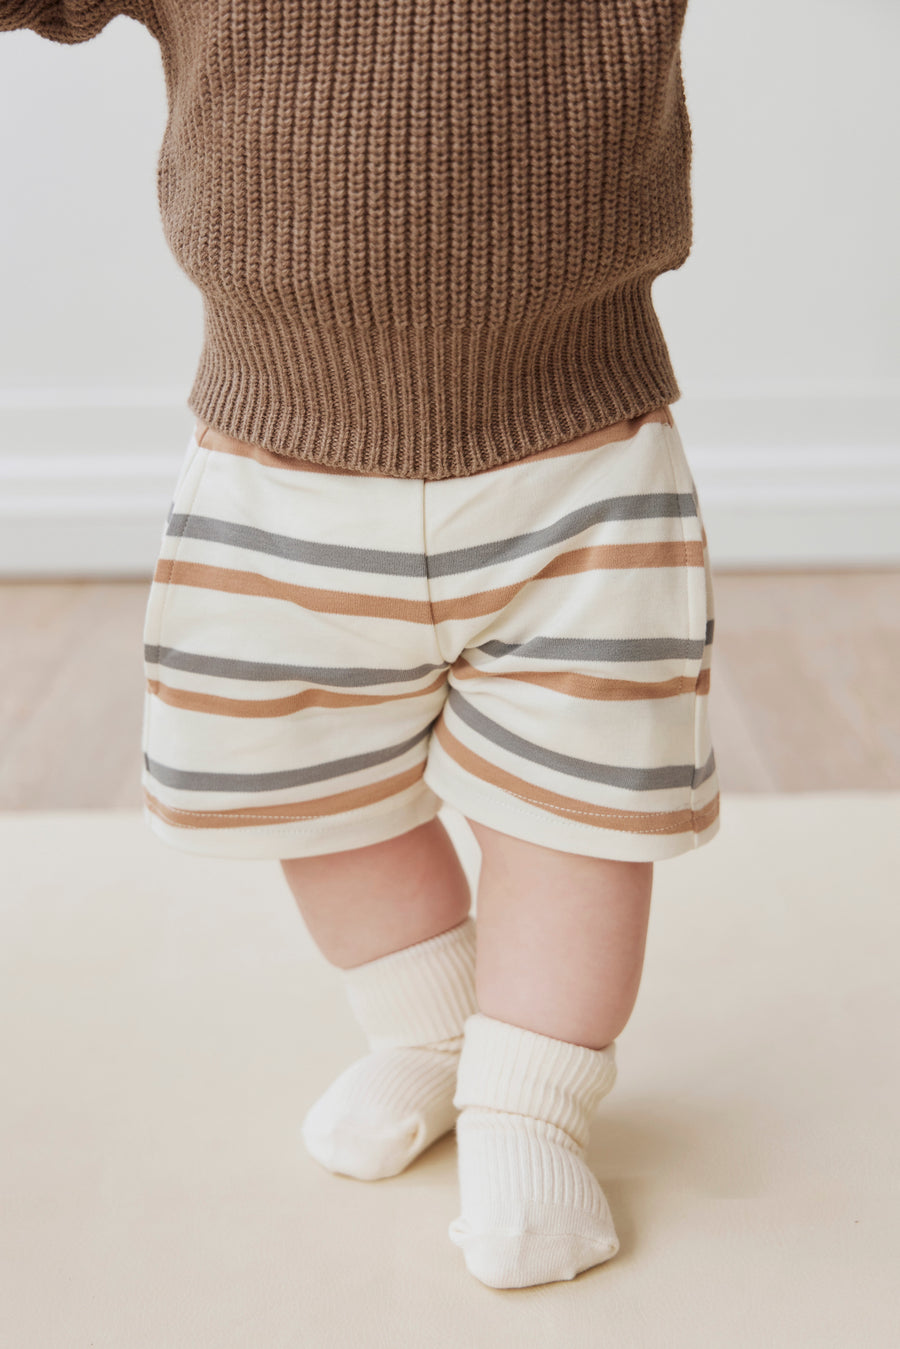 Pima Cotton Jalen Short - Hudson Stripe Childrens Short from Jamie Kay NZ